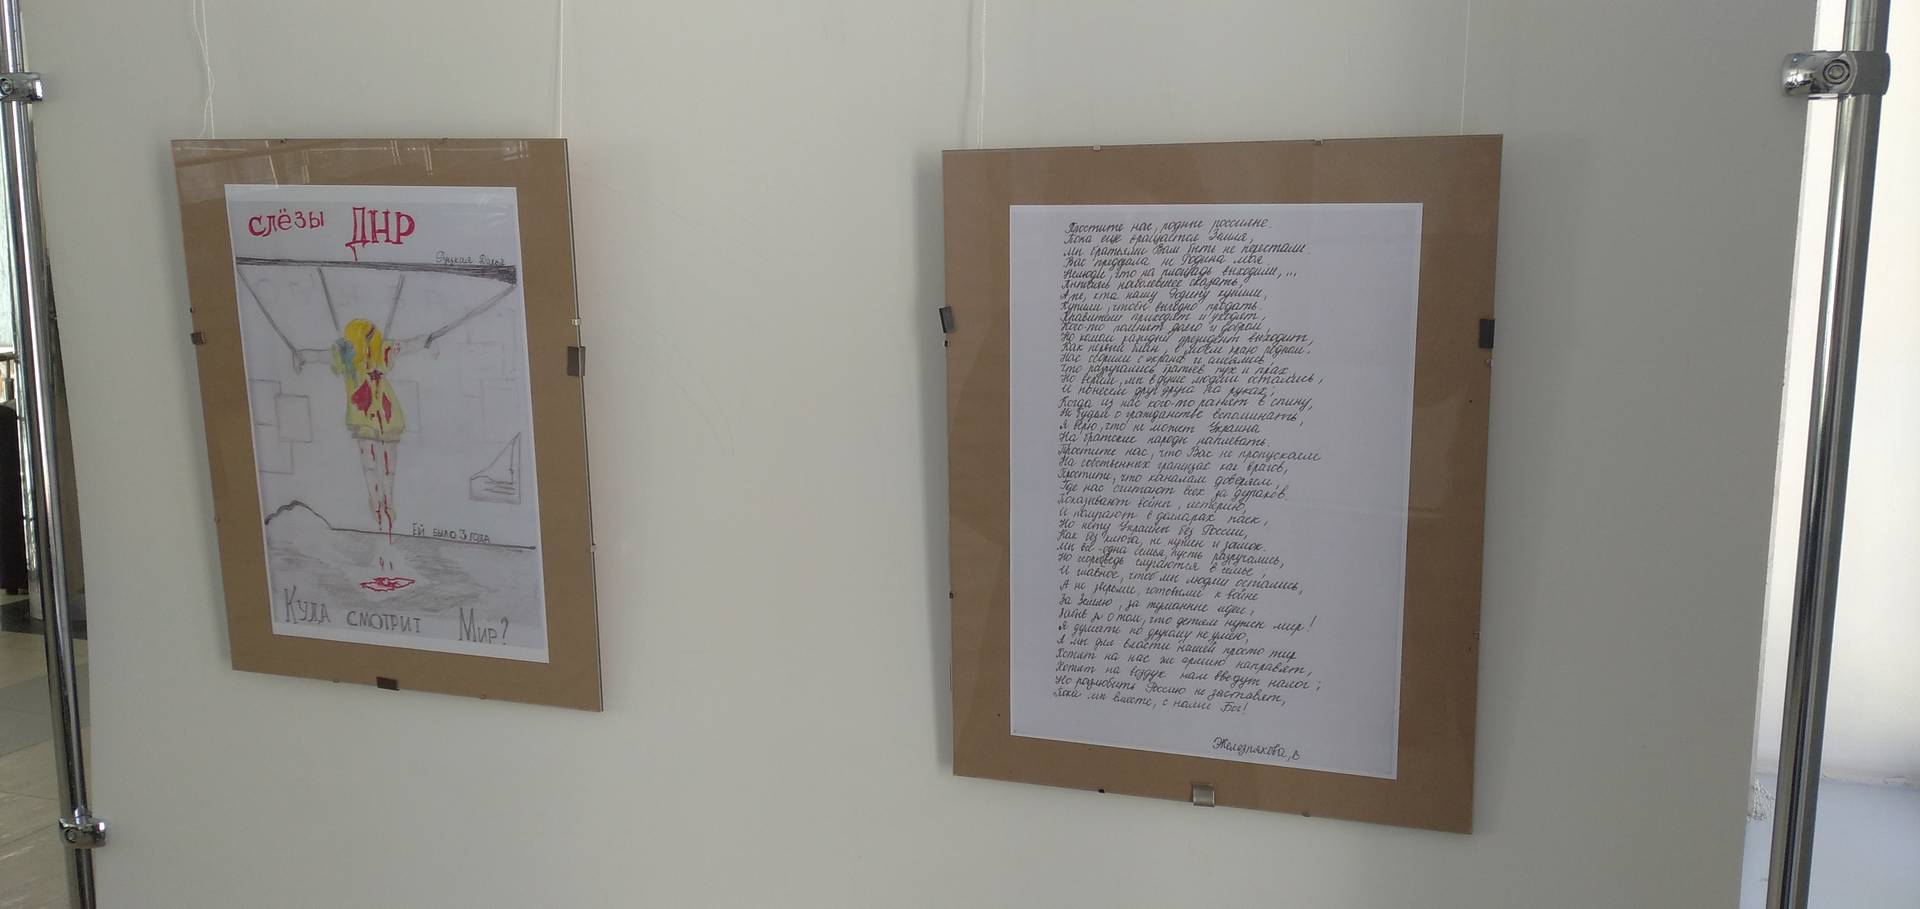 Выставка «Донбасс. Дети и война», рисунок «Слёзы ДНР» и стихотворение «Простите нас родные россияне...»